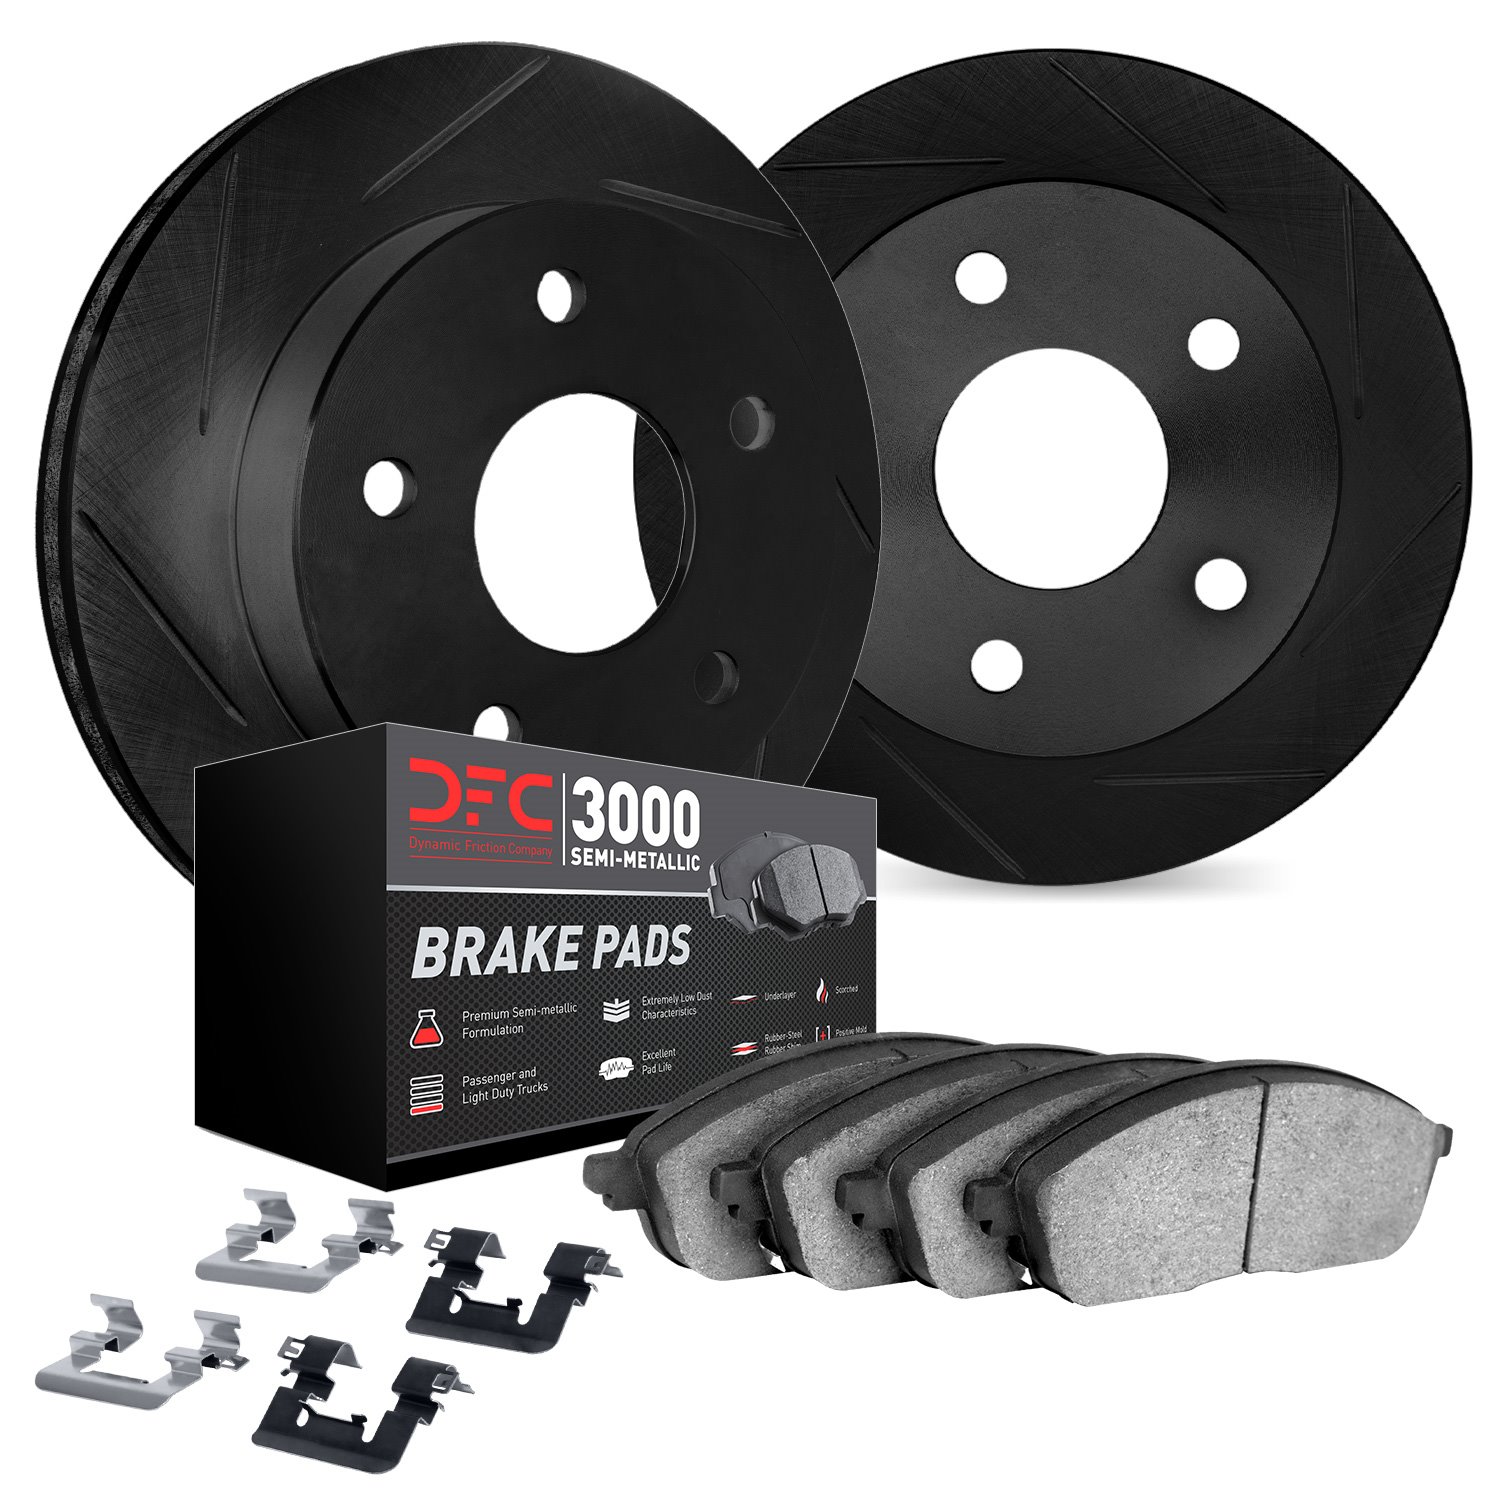 3112-31081 Slotted Brake Rotors with 3000-Series Semi-Metallic Brake Pads Kit & Hardware [Black], 2007-2019 BMW, Position: Rear